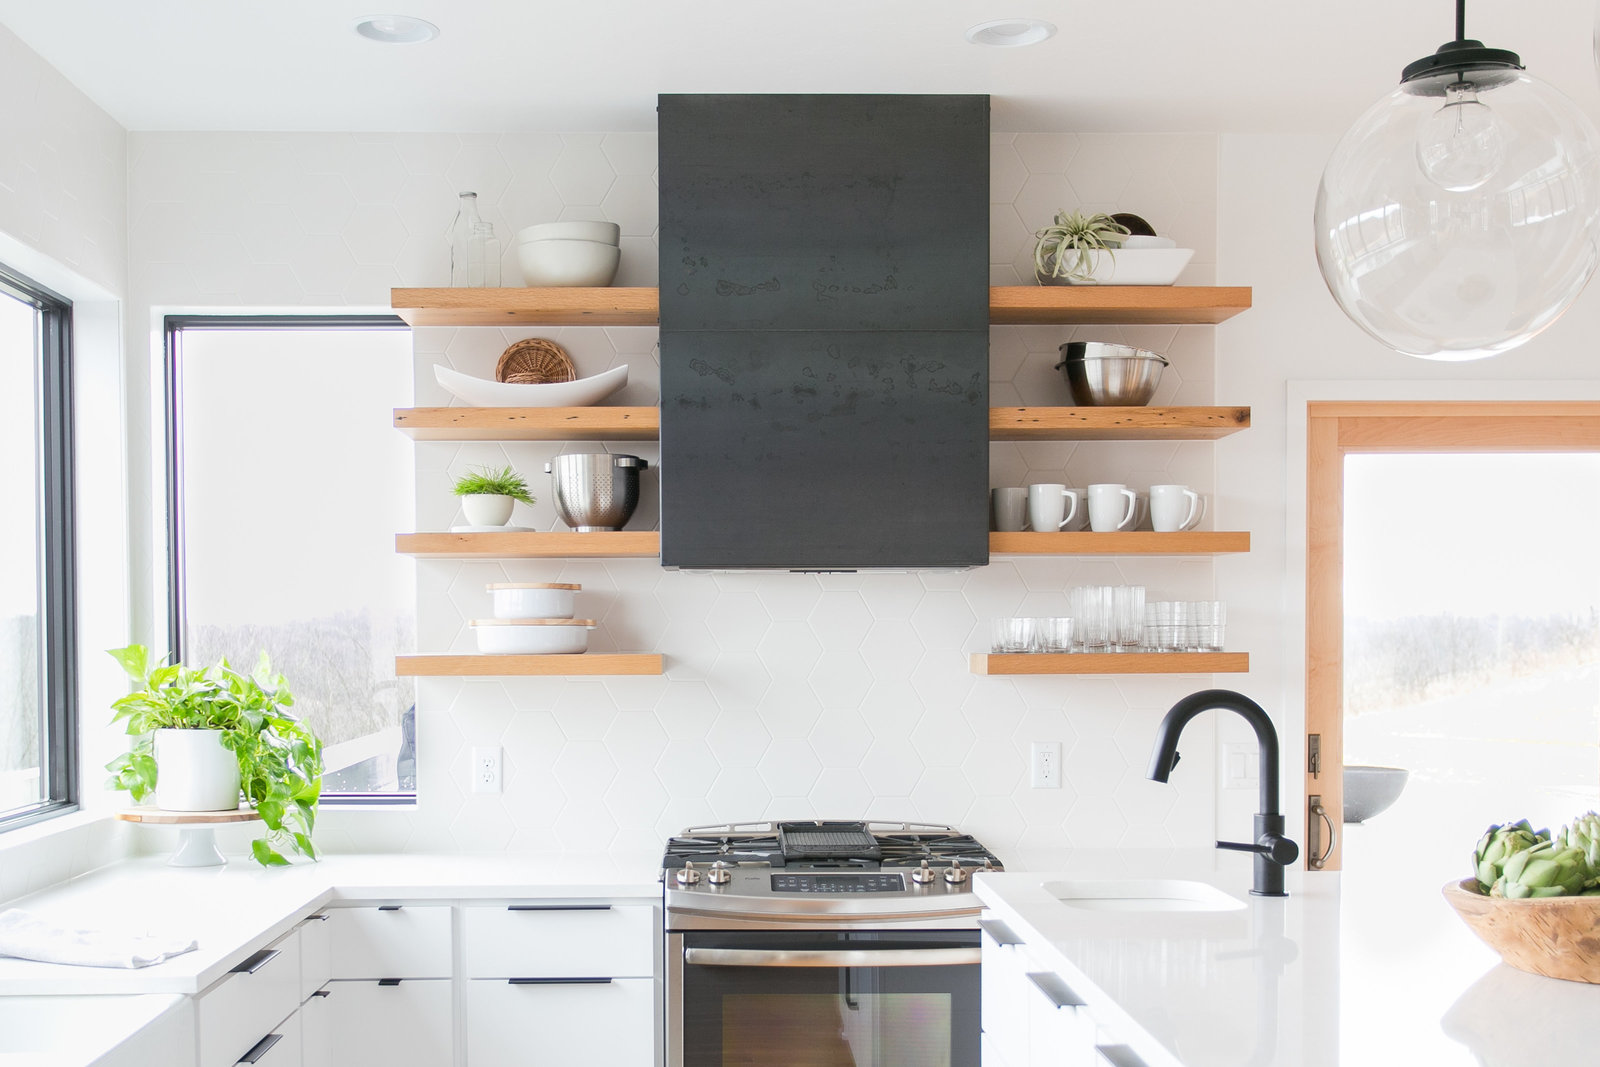 Modern, warm kitchen design.  Minimalist, white cabinets and backsplash.